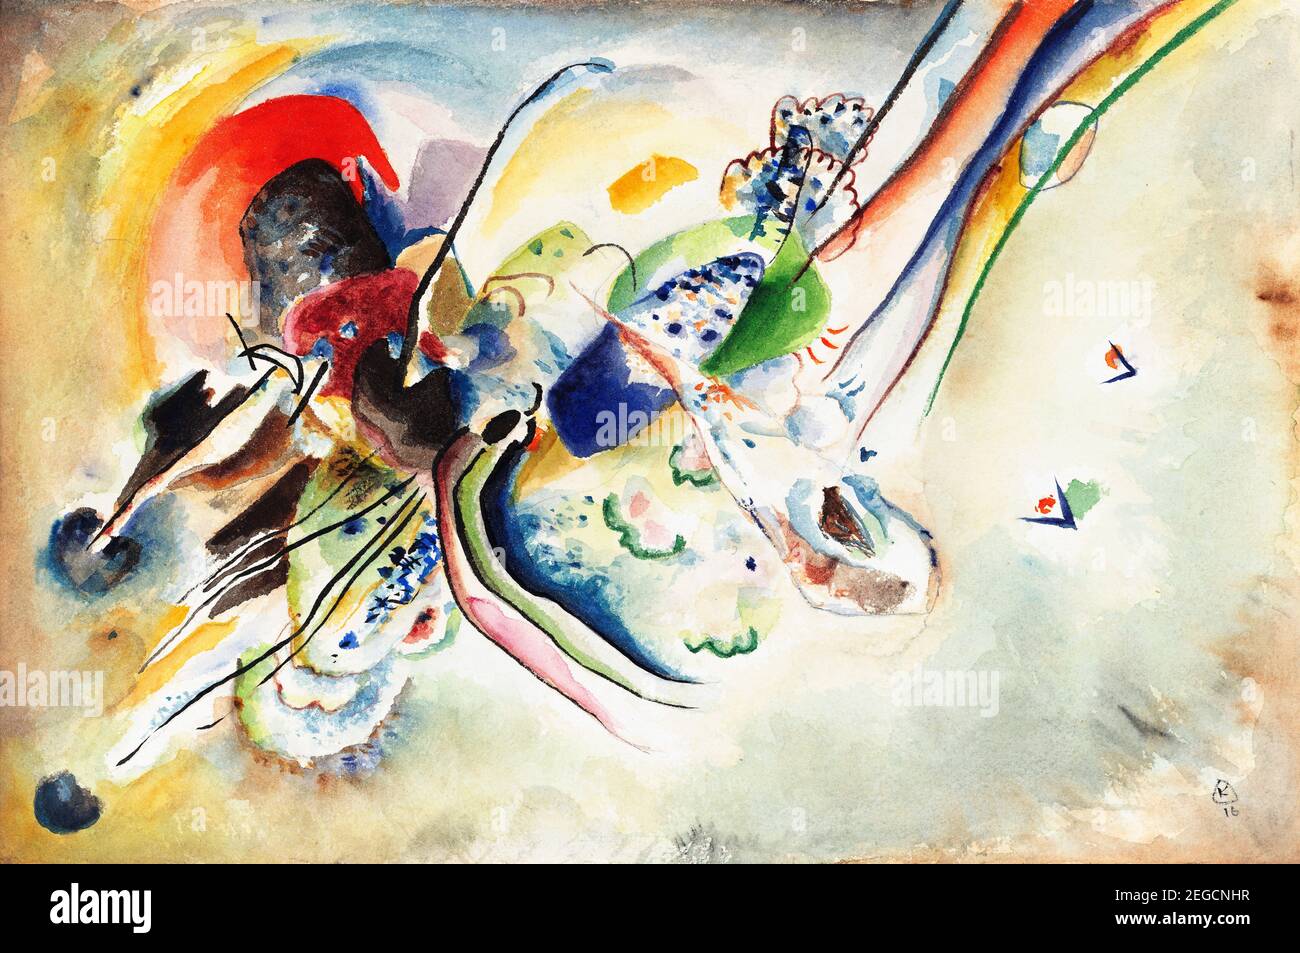 Peinture Kandinsky. 'Composition (Etude pour 'Bild mit zwei roten Flecken')' par Wassily Kandinsky (1866-1944), aquarelle et crayon sur papier, 1916 Banque D'Images